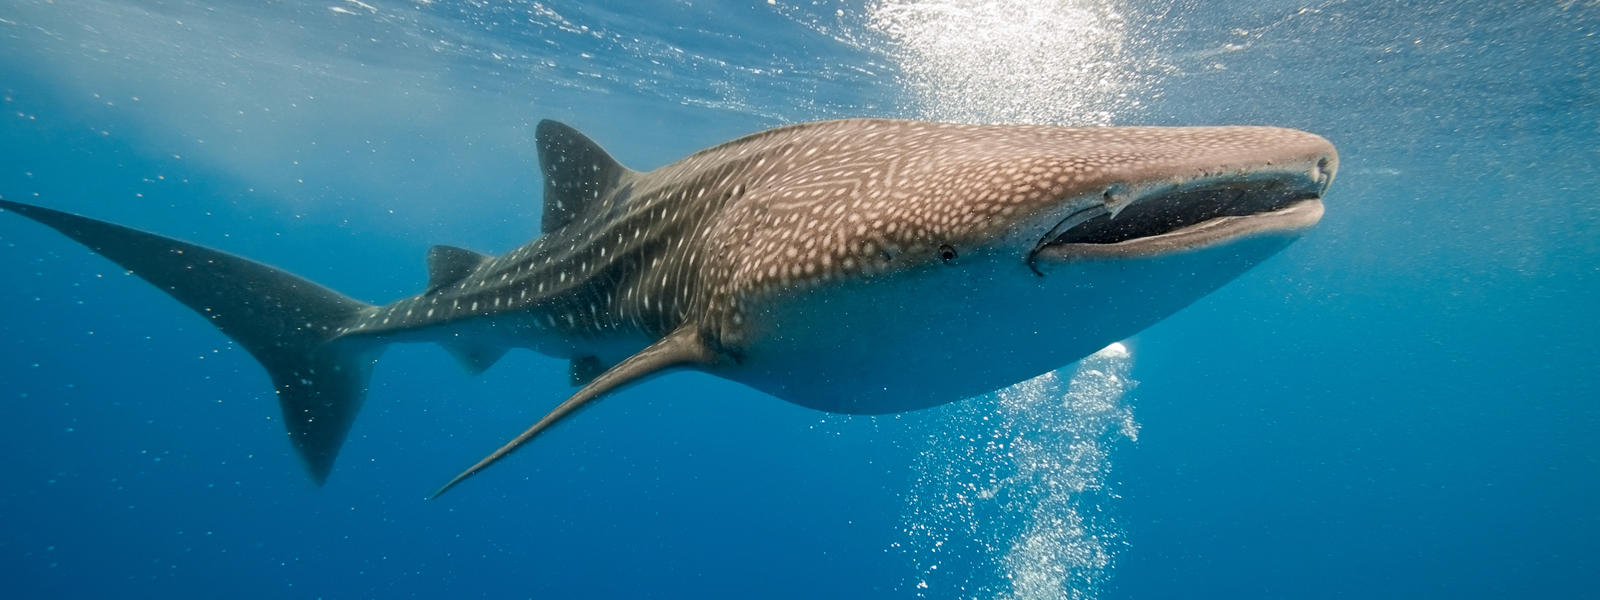 Величественная китовая акула фото